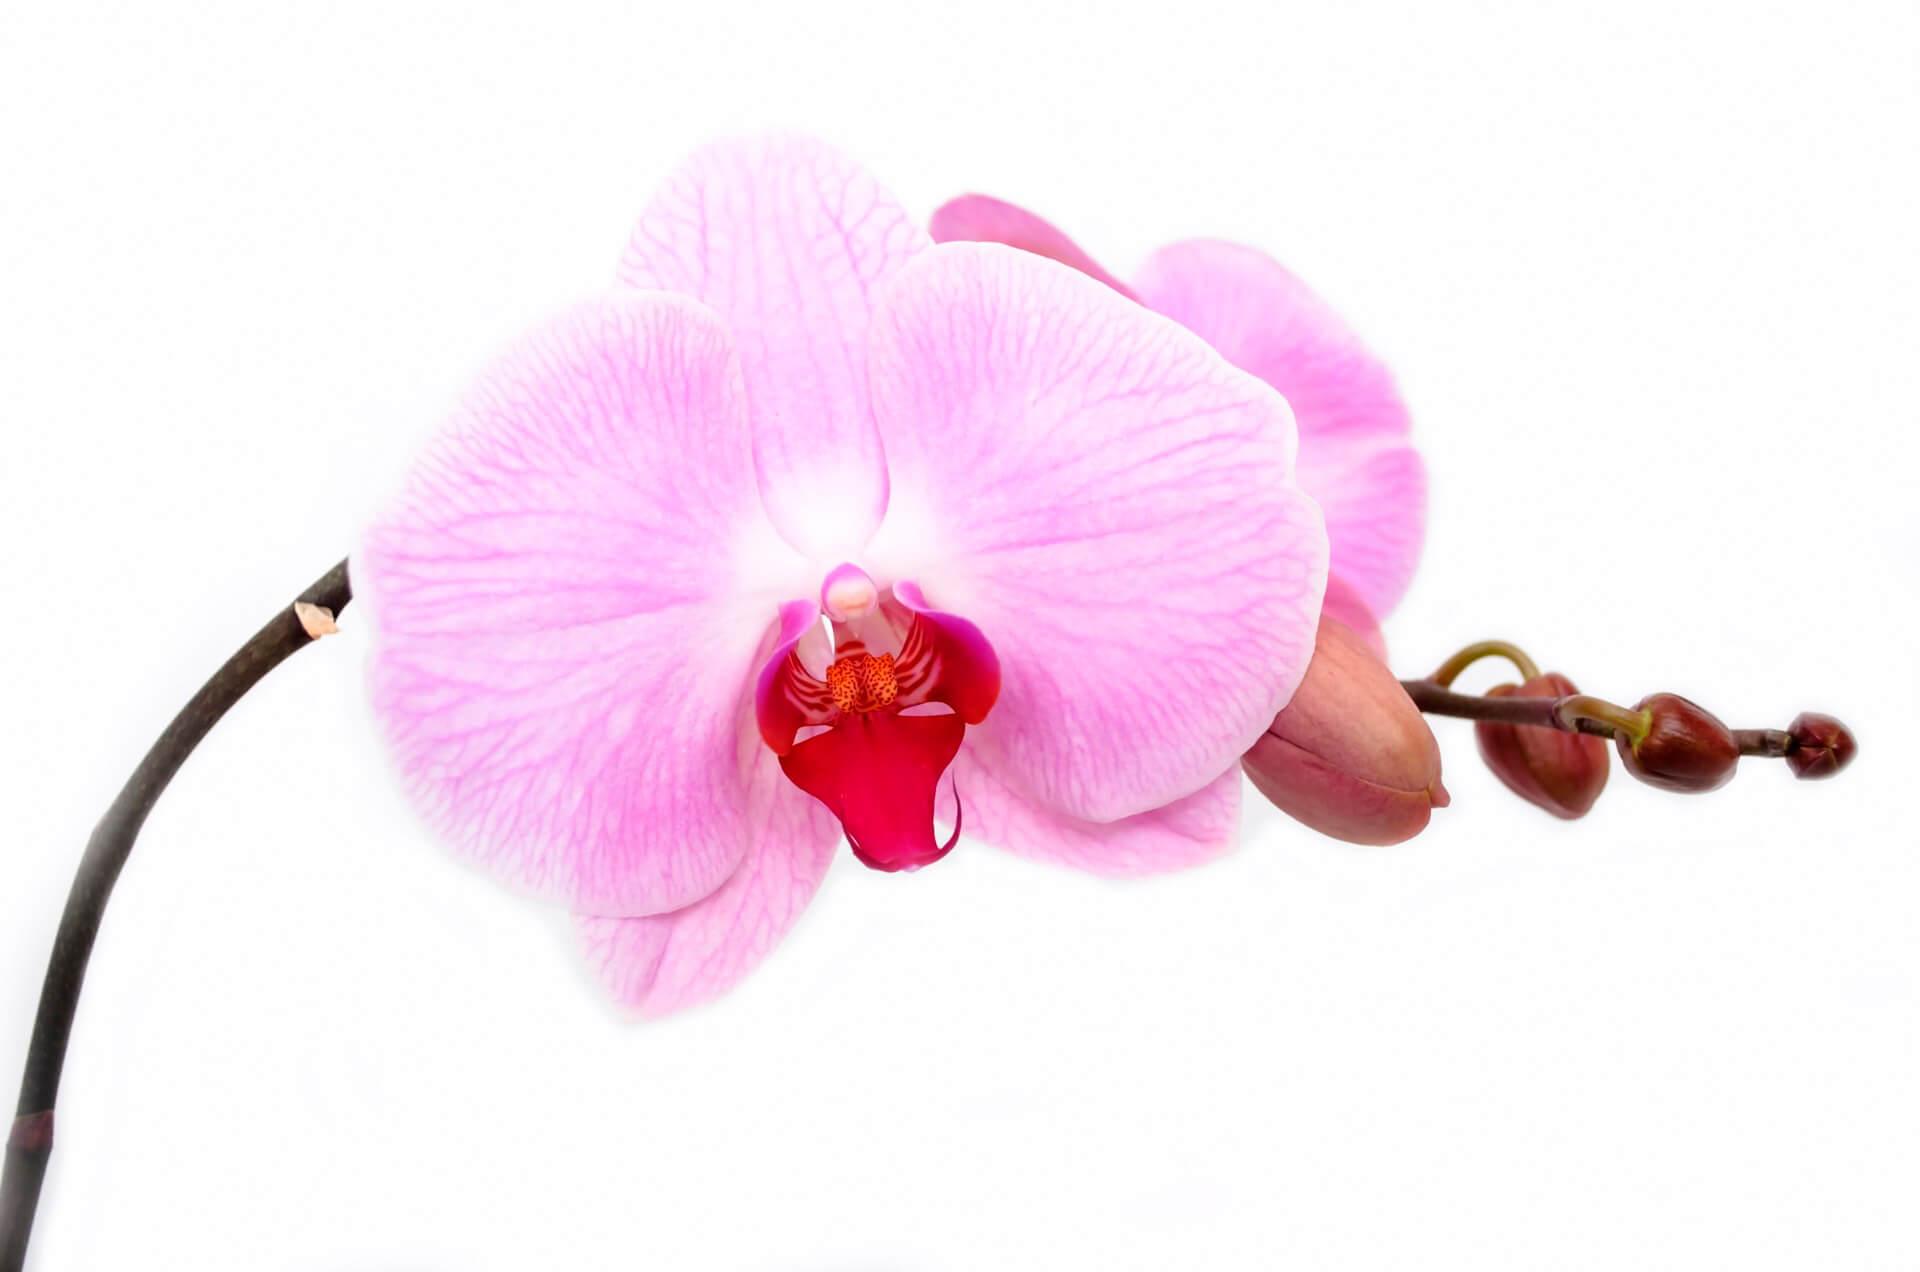 Orchid pink ƒe alɔ aɖe